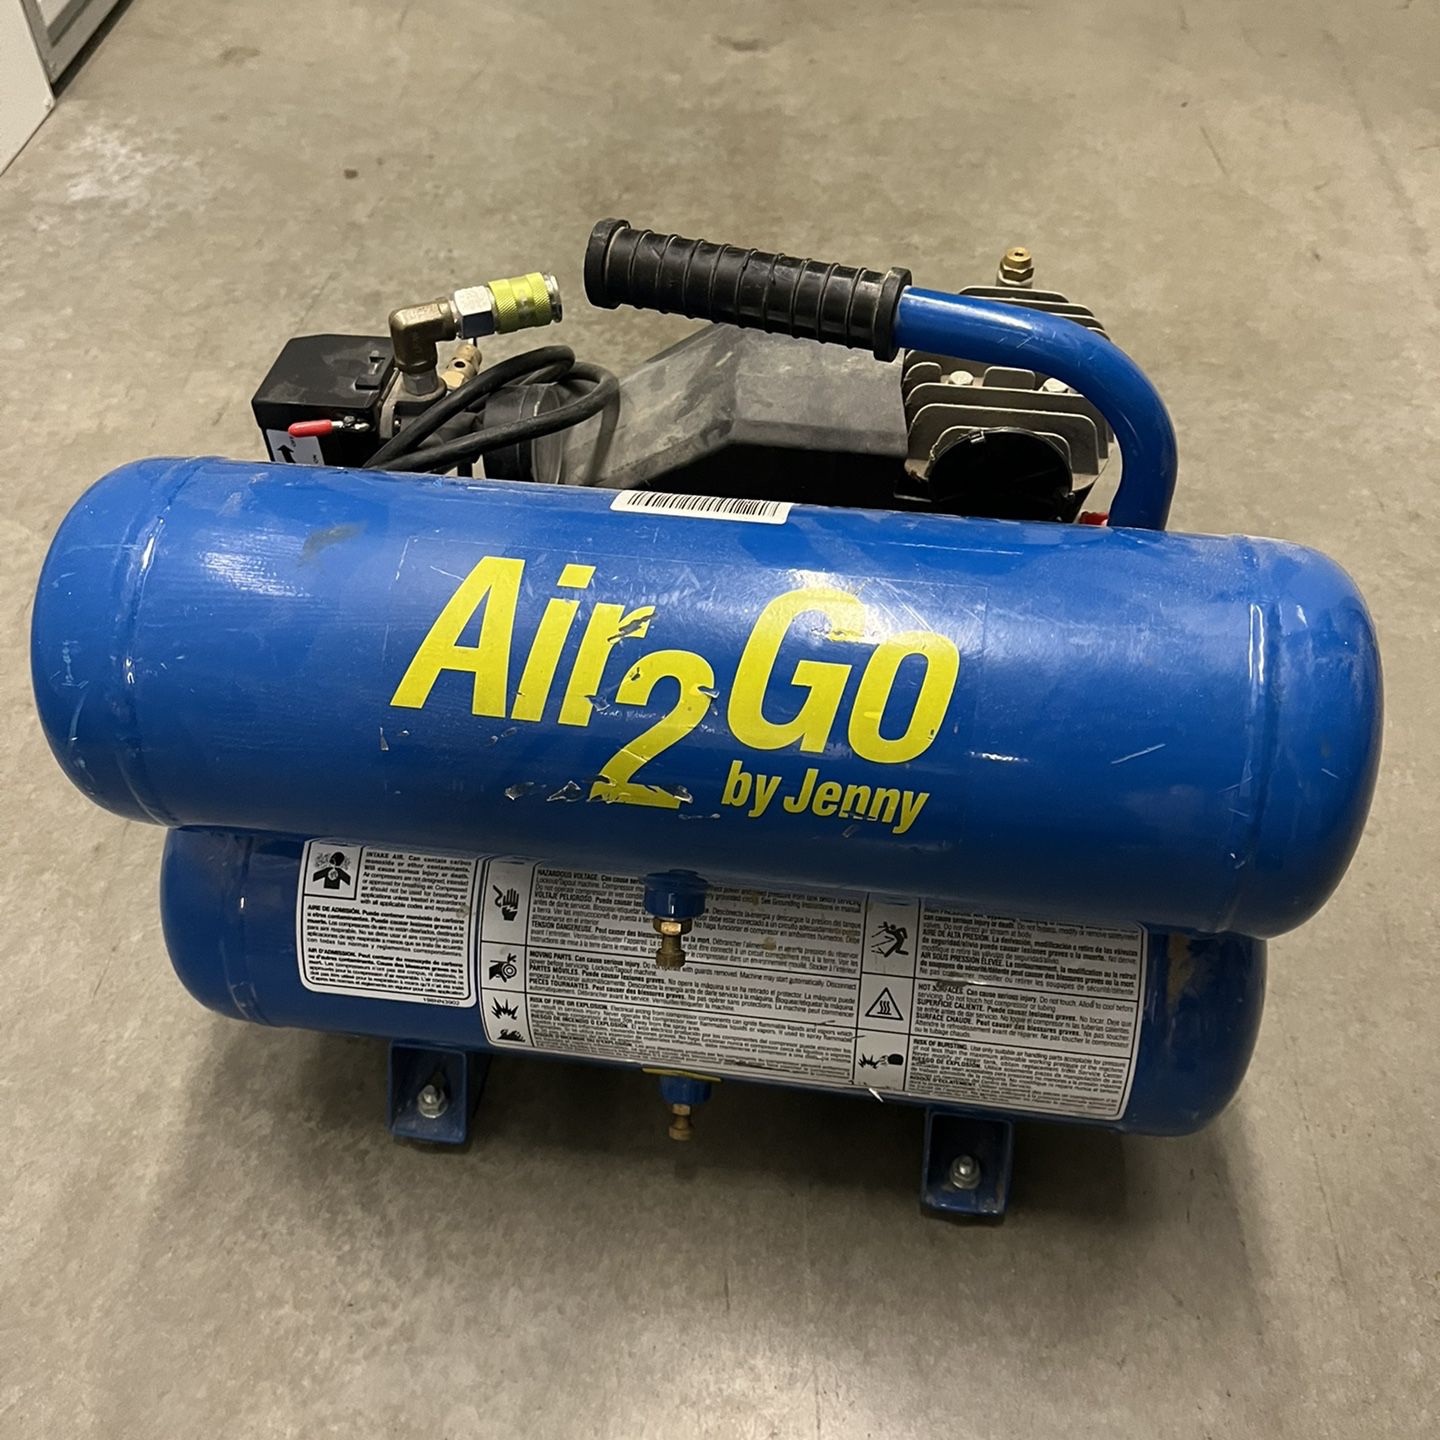 Air to go air compressor